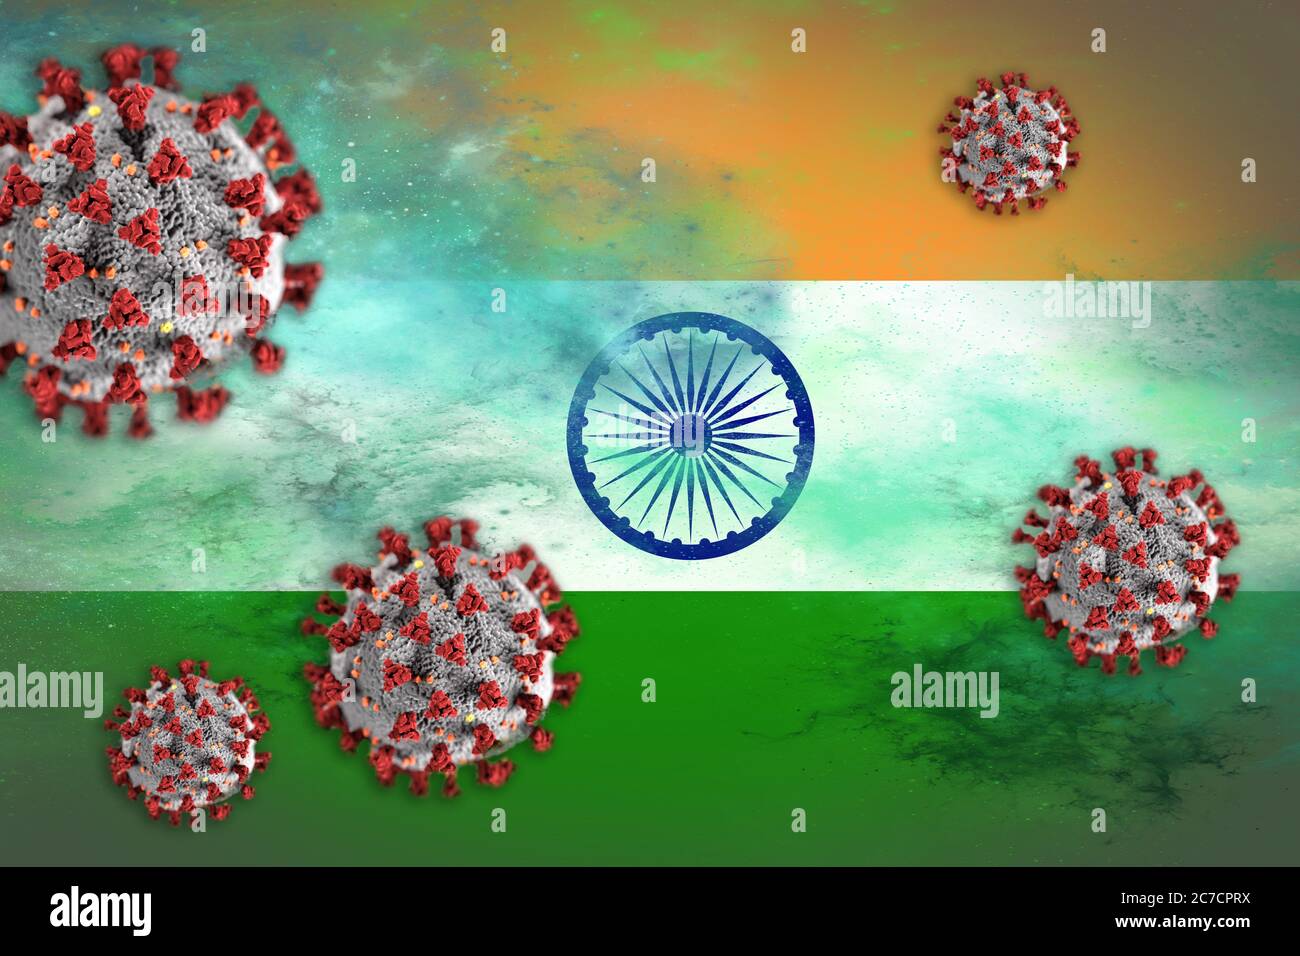 Concept de coronavirus ou de particules Covid-19 qui éclipsent le drapeau de l'Inde symbolisant l'éclosion. Banque D'Images